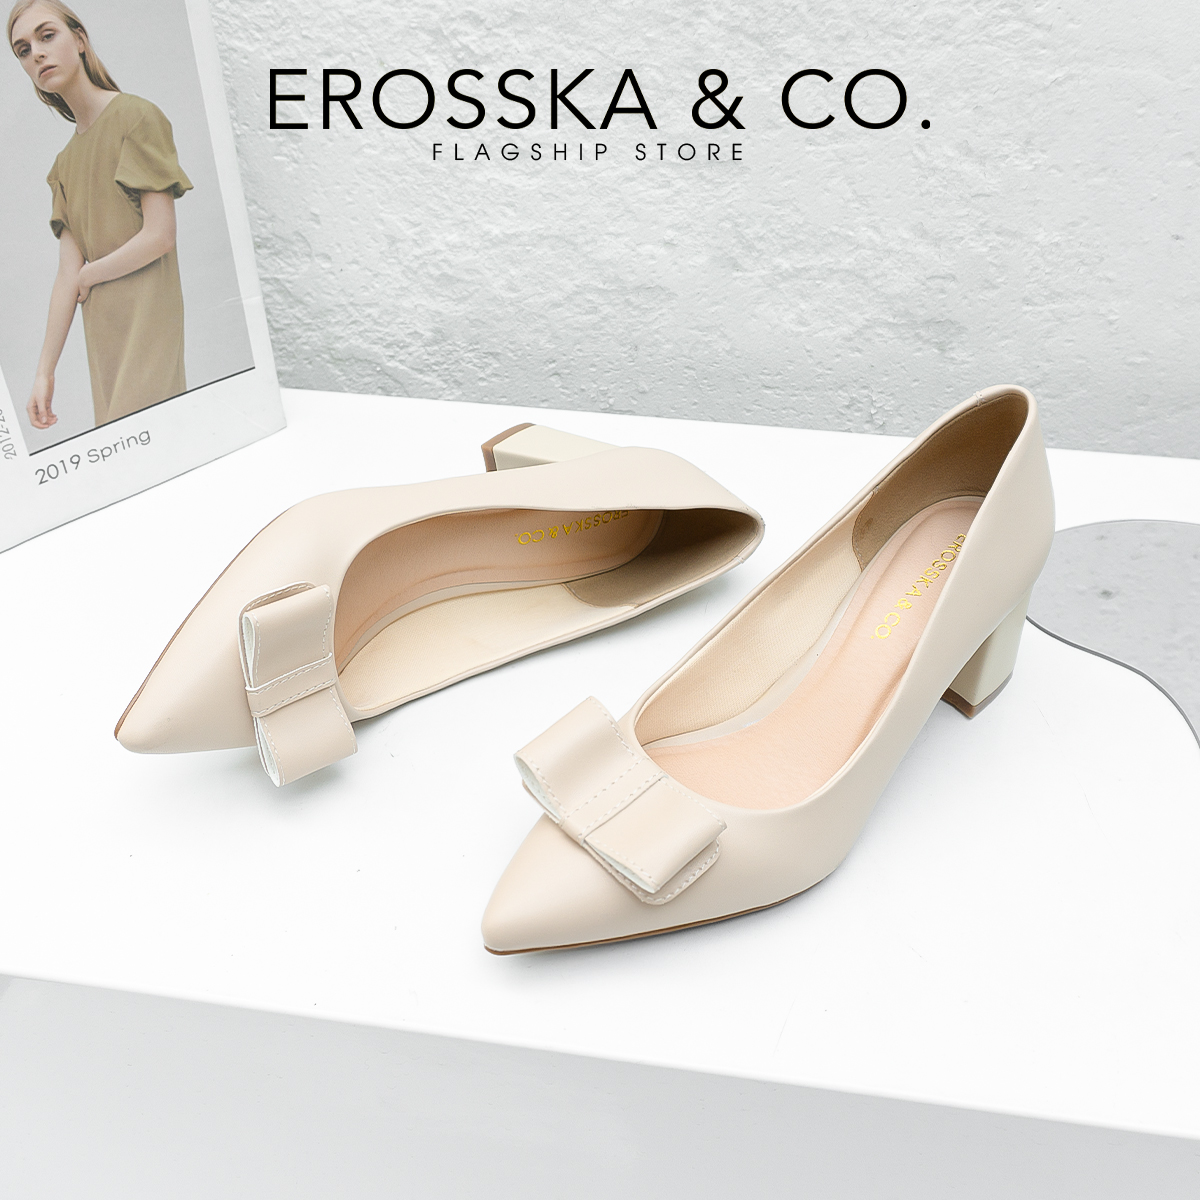 Erosska - Giày cao gót mũi nhọn phối nơ cao 5cm màu nude - EP015